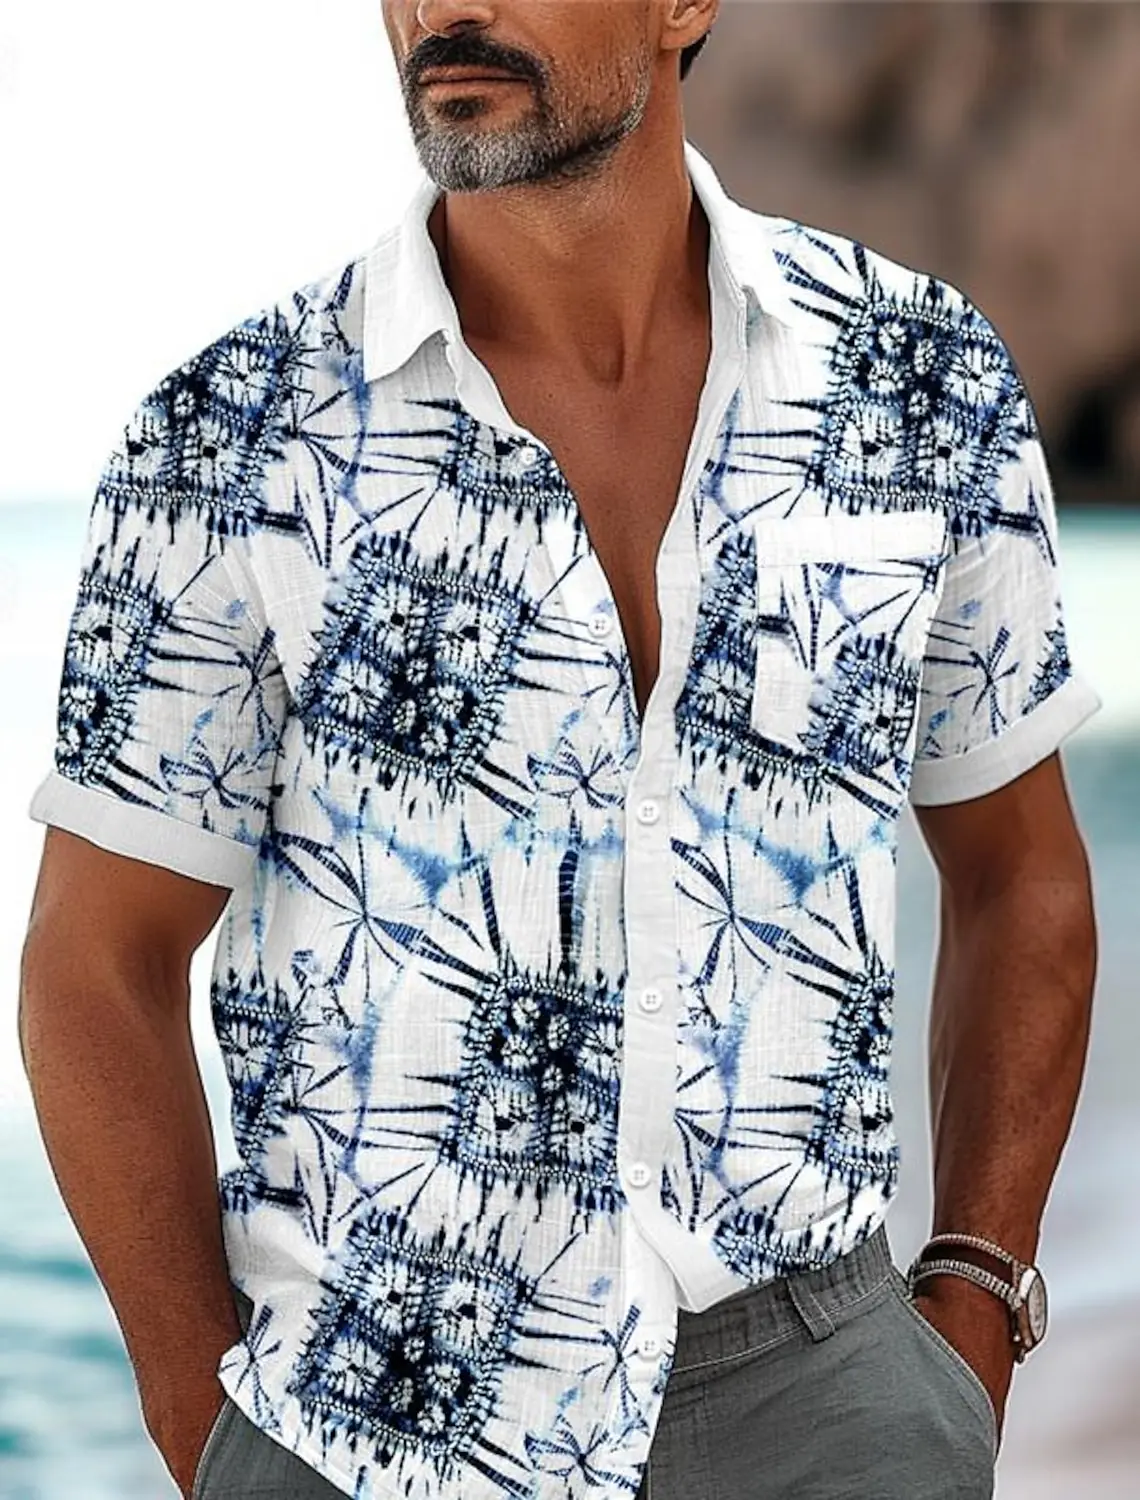 

Graphic Men's Resort Hawaiian 3D Printed Shirt Holiday Daily Wear Vacation Summer Turndown Short Sleeves shirts Polyester Shirt